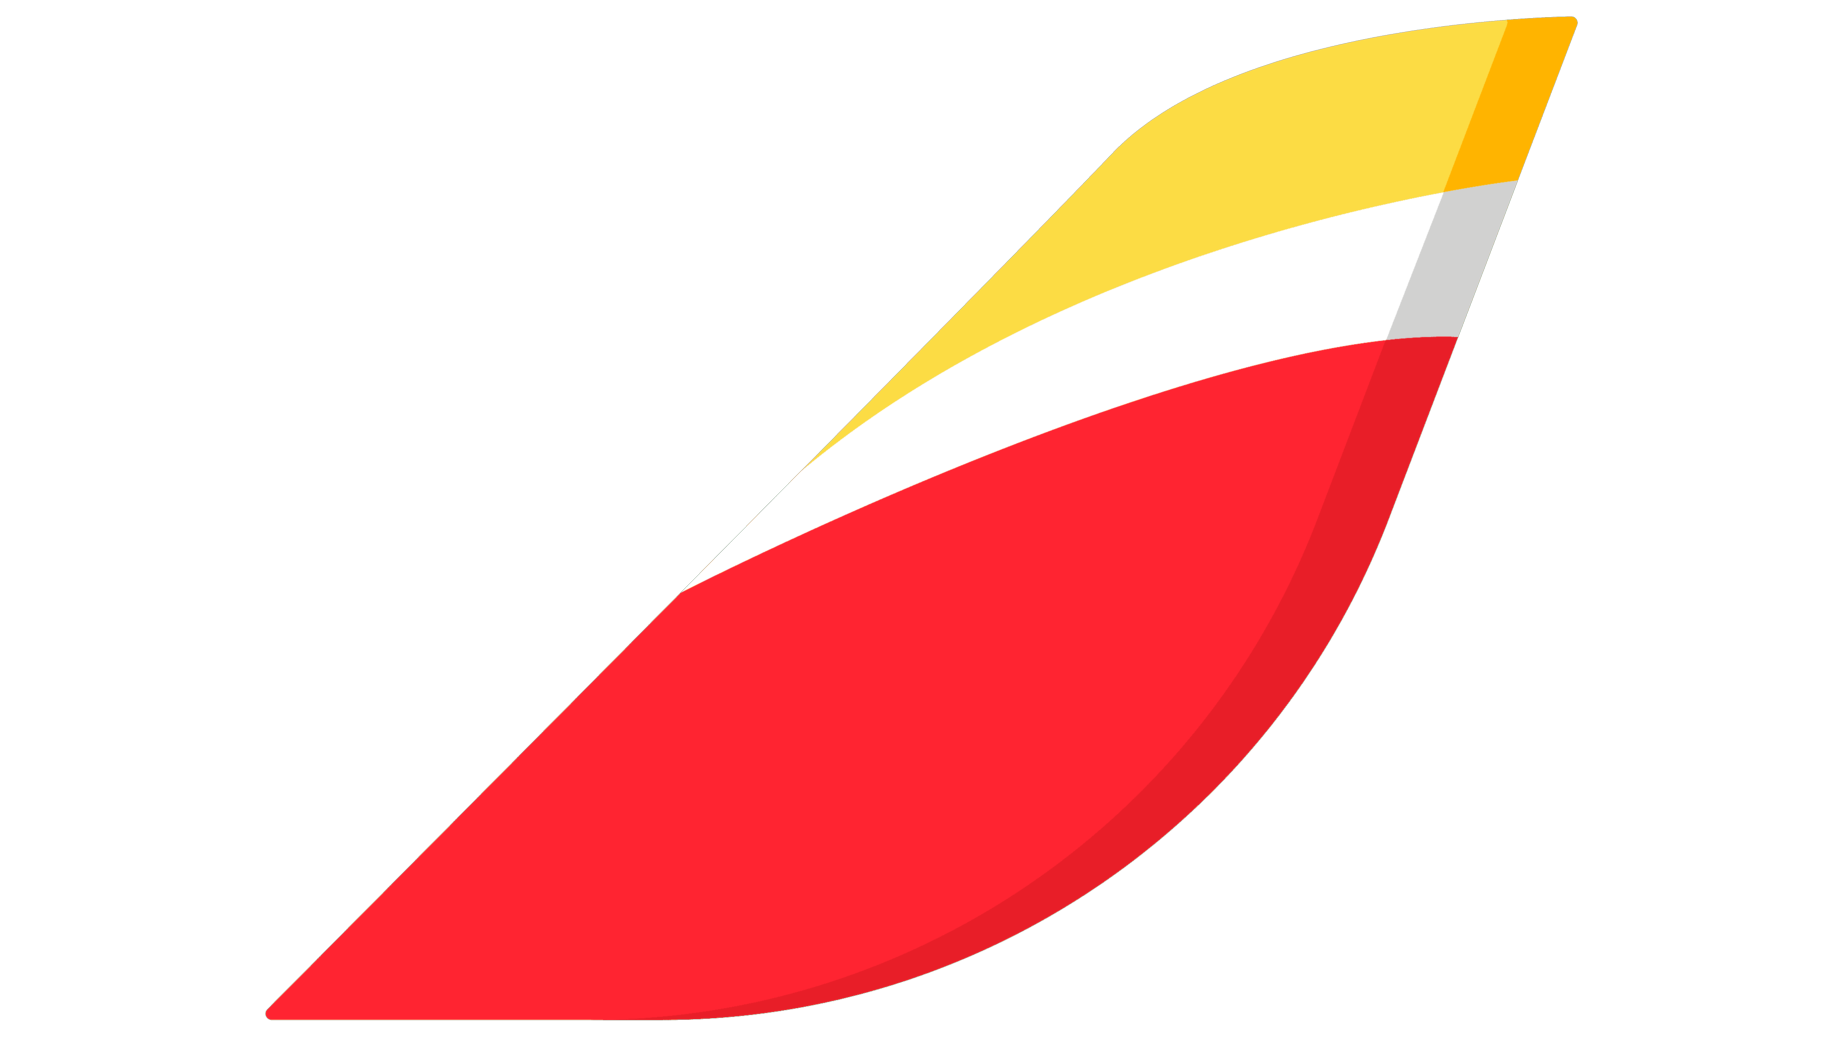 Iberia symbol